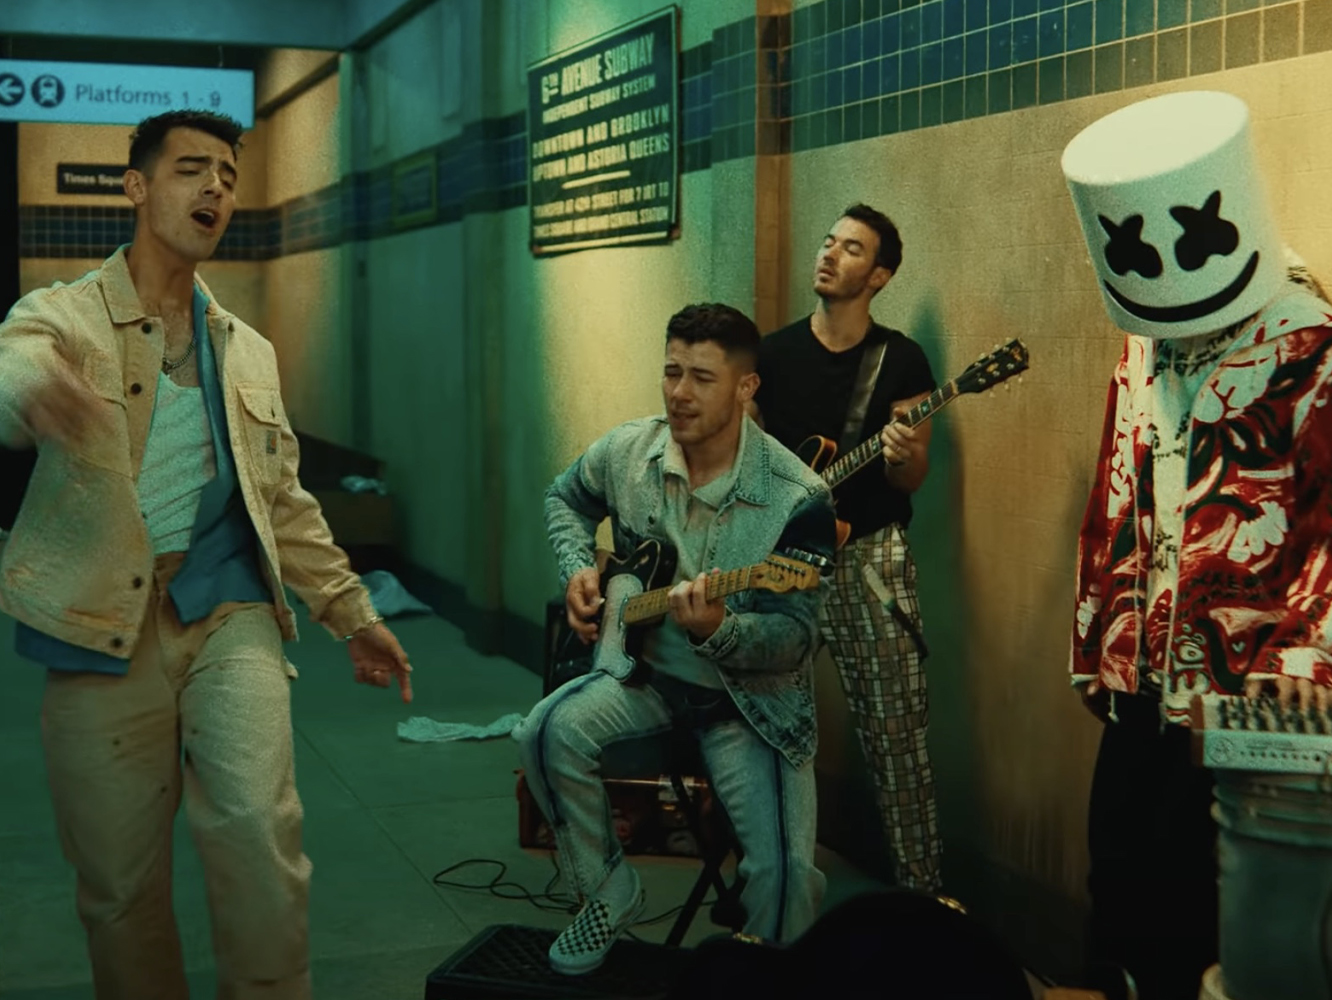  Jonas Brothers lanzan ‘Leave Before You Love Me’, obviamente inspirado en otro tema